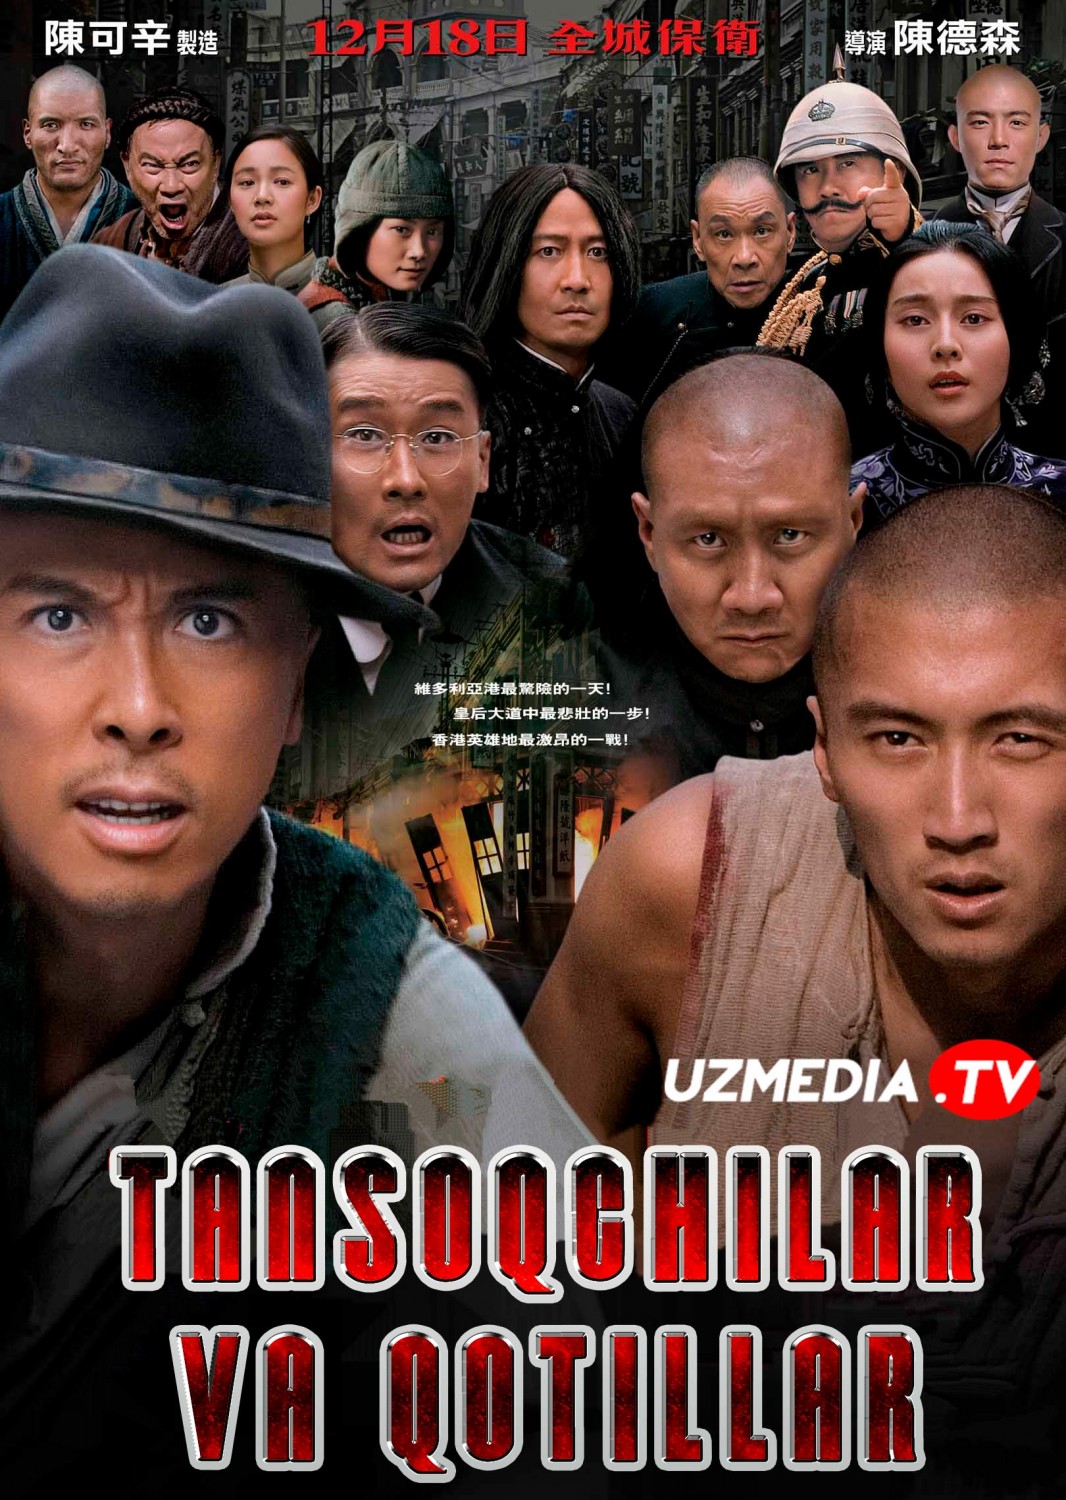 Tansoqchilar va qotillar Xitoy filmi Uzbek tilida O'zbekcha 2009 tarjima kino Full HD skachat